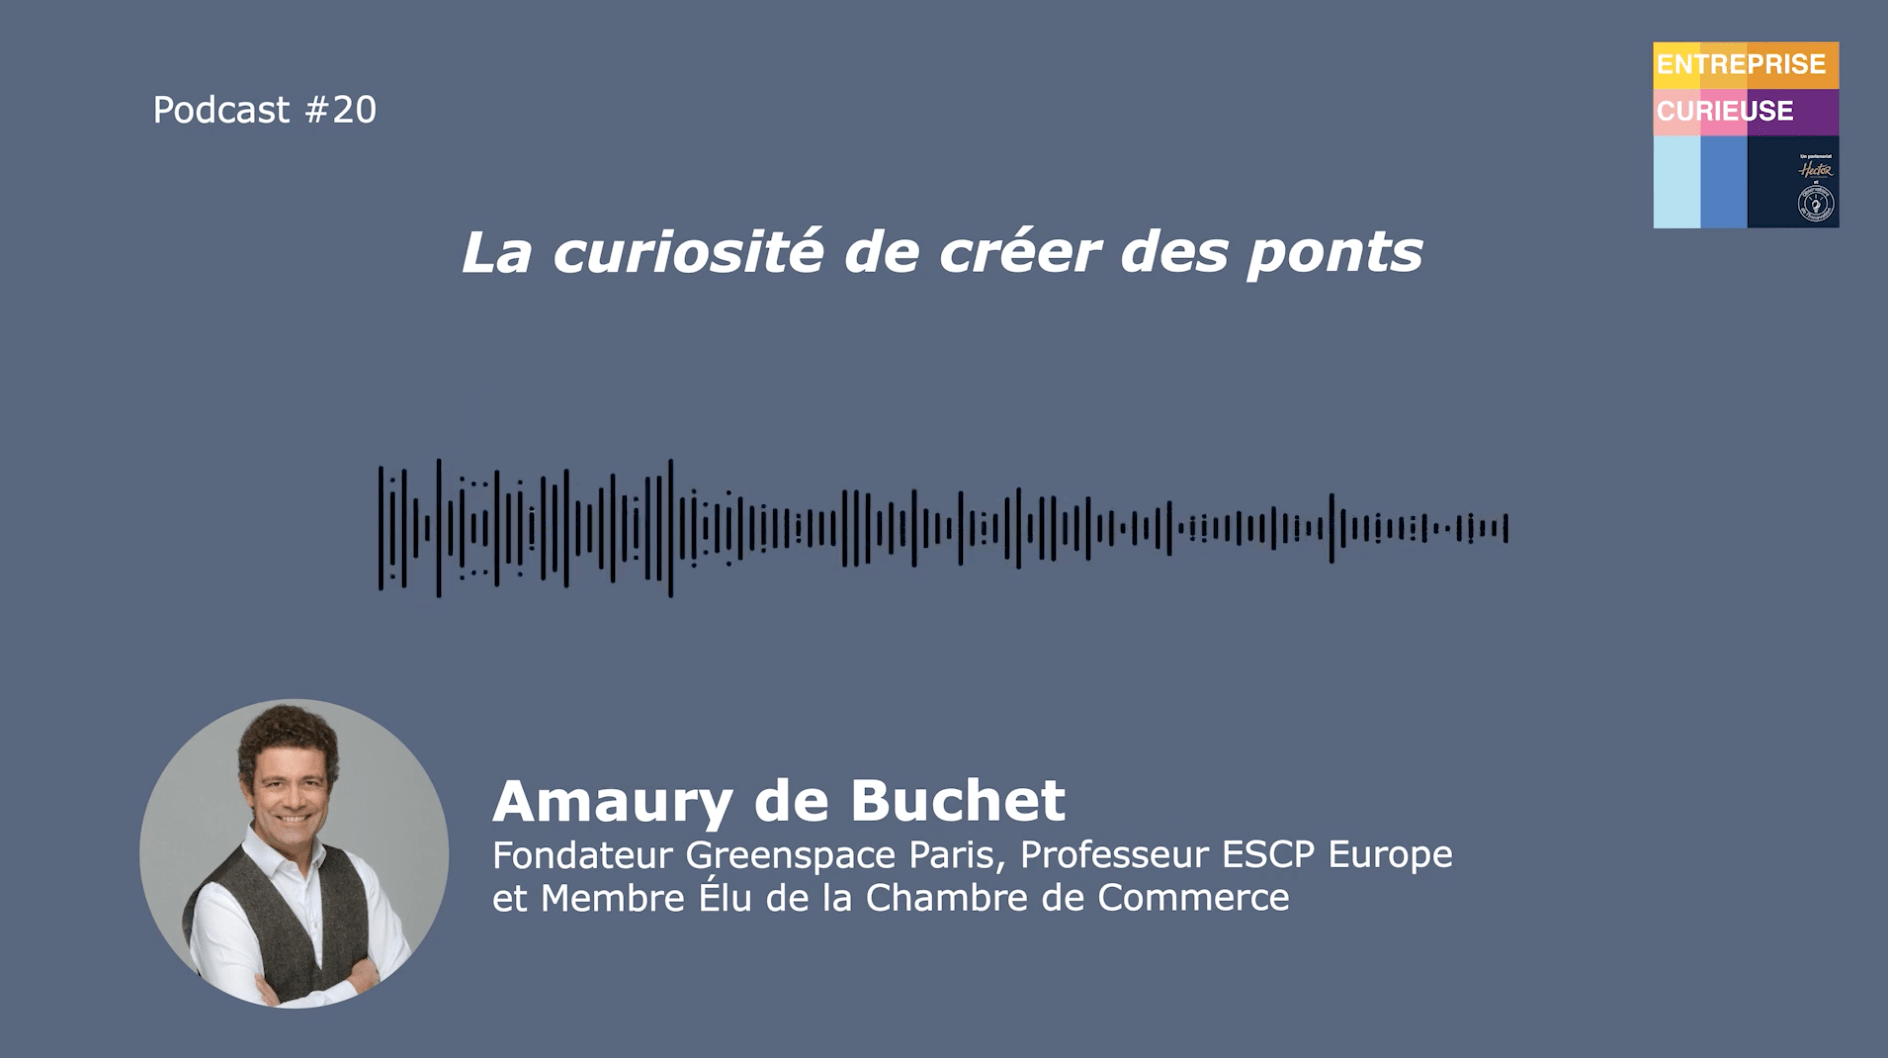 Amaury de Buchet - Entreprise curieuse